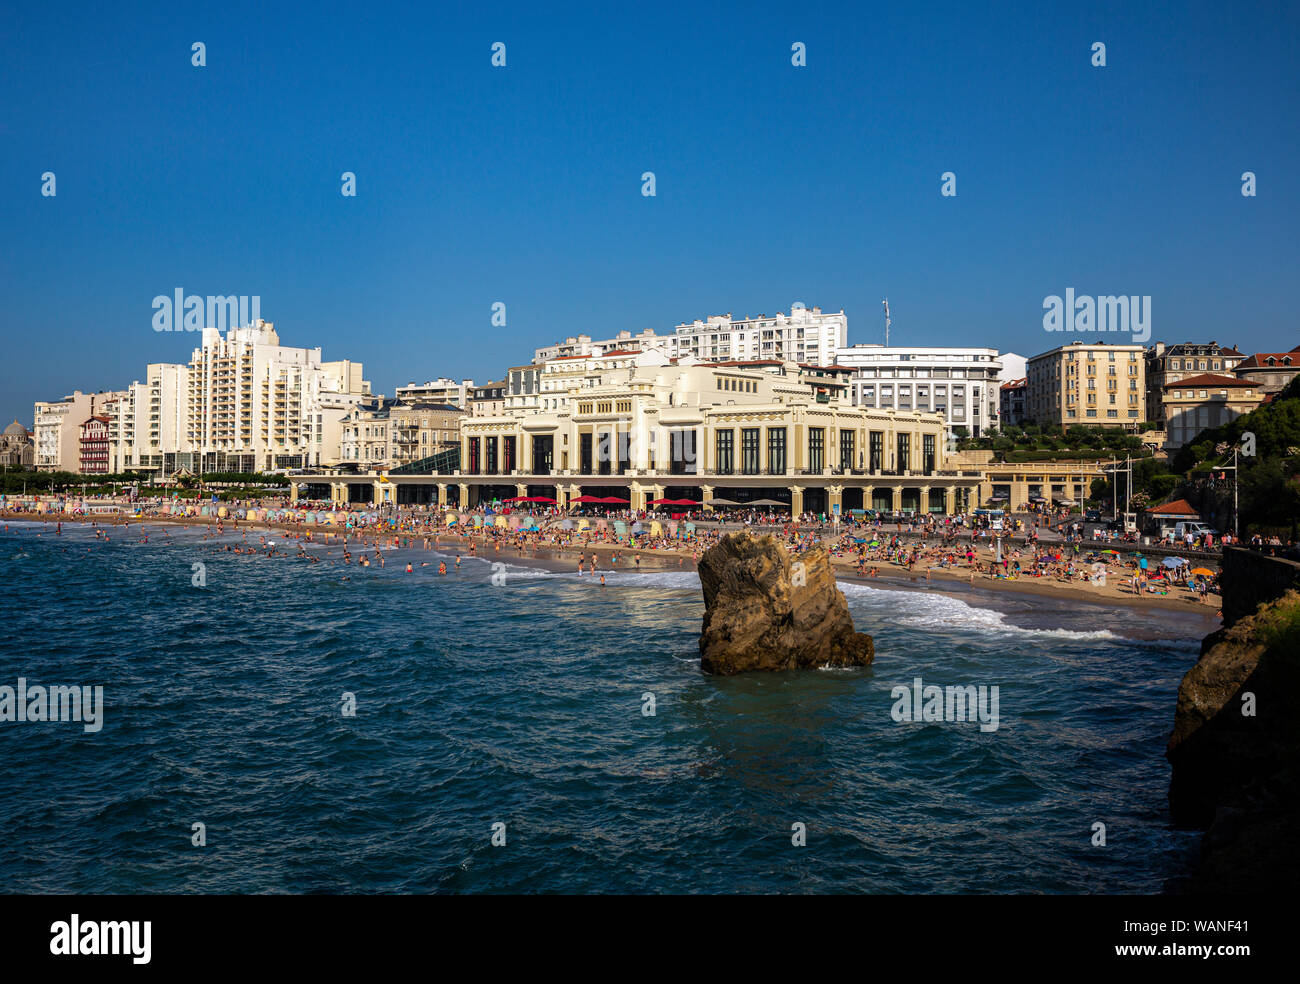 Die Städtischen Casino und der Große Strand von Biarritz (Atlantische Pyrenäen - Frankreich). Dieser Raum begrüßt, den G7-Gipfel 2019 Vom 24. bis 26. August. Stockfoto